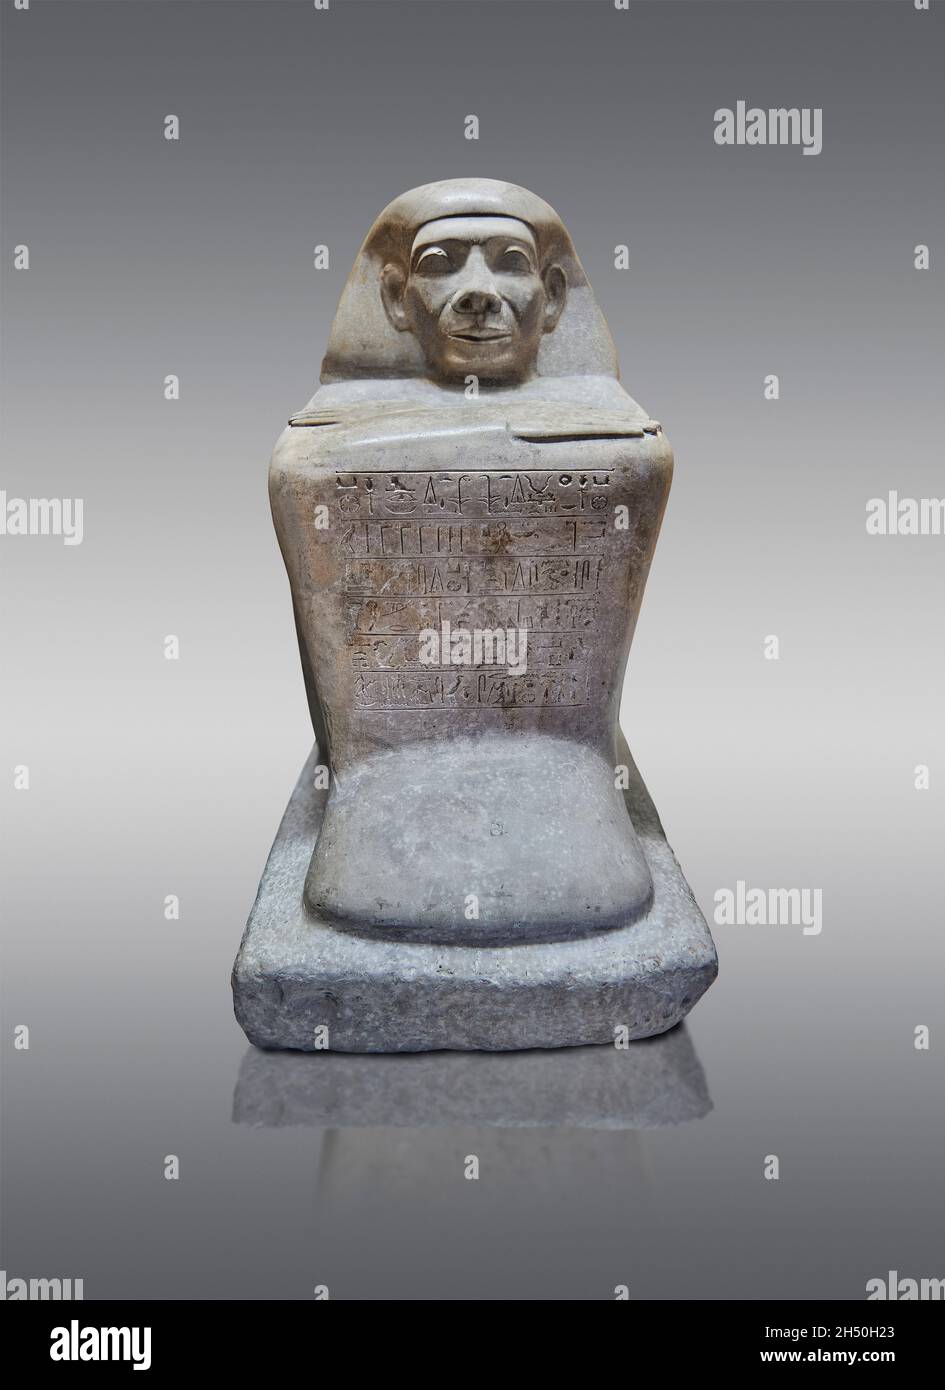 Antica statua a cubo egiziana scultura del portabandiera Ser, 1786 - 1650 a.C., dodicesima dinastia. Museo del Louvre inv A76 o N77. Uomo (squadrante, braccia incrociate, parrucca Foto Stock